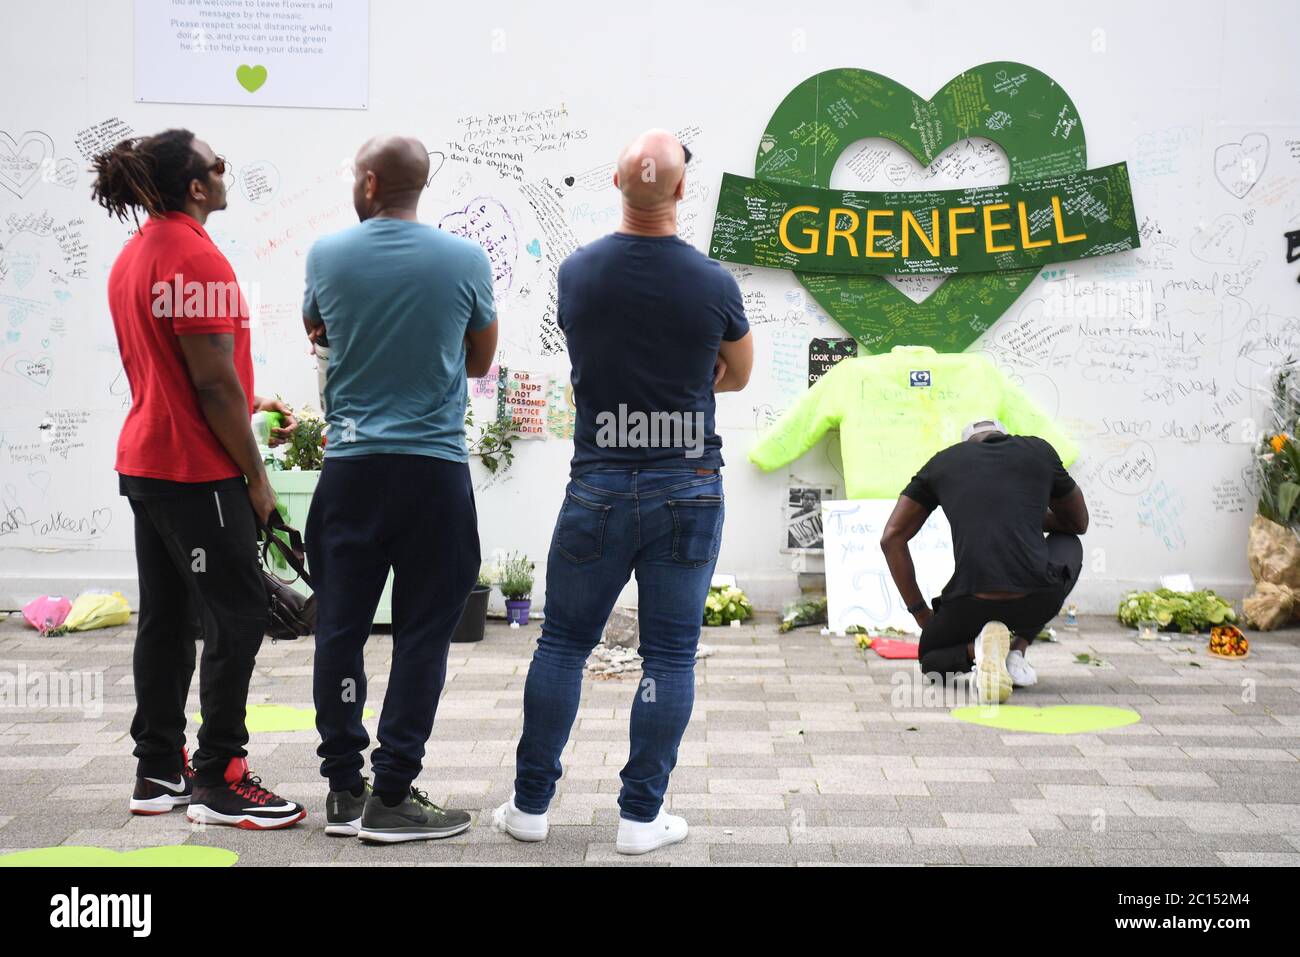 Menschen in der Grenfell Memorial Community Mosaik am Fuße des Tower Blocks in London zum dritten Jahrestag des Grenfell Tower Feuers, der am 14 2017. Juni 72 Menschenleben forderte. Stockfoto